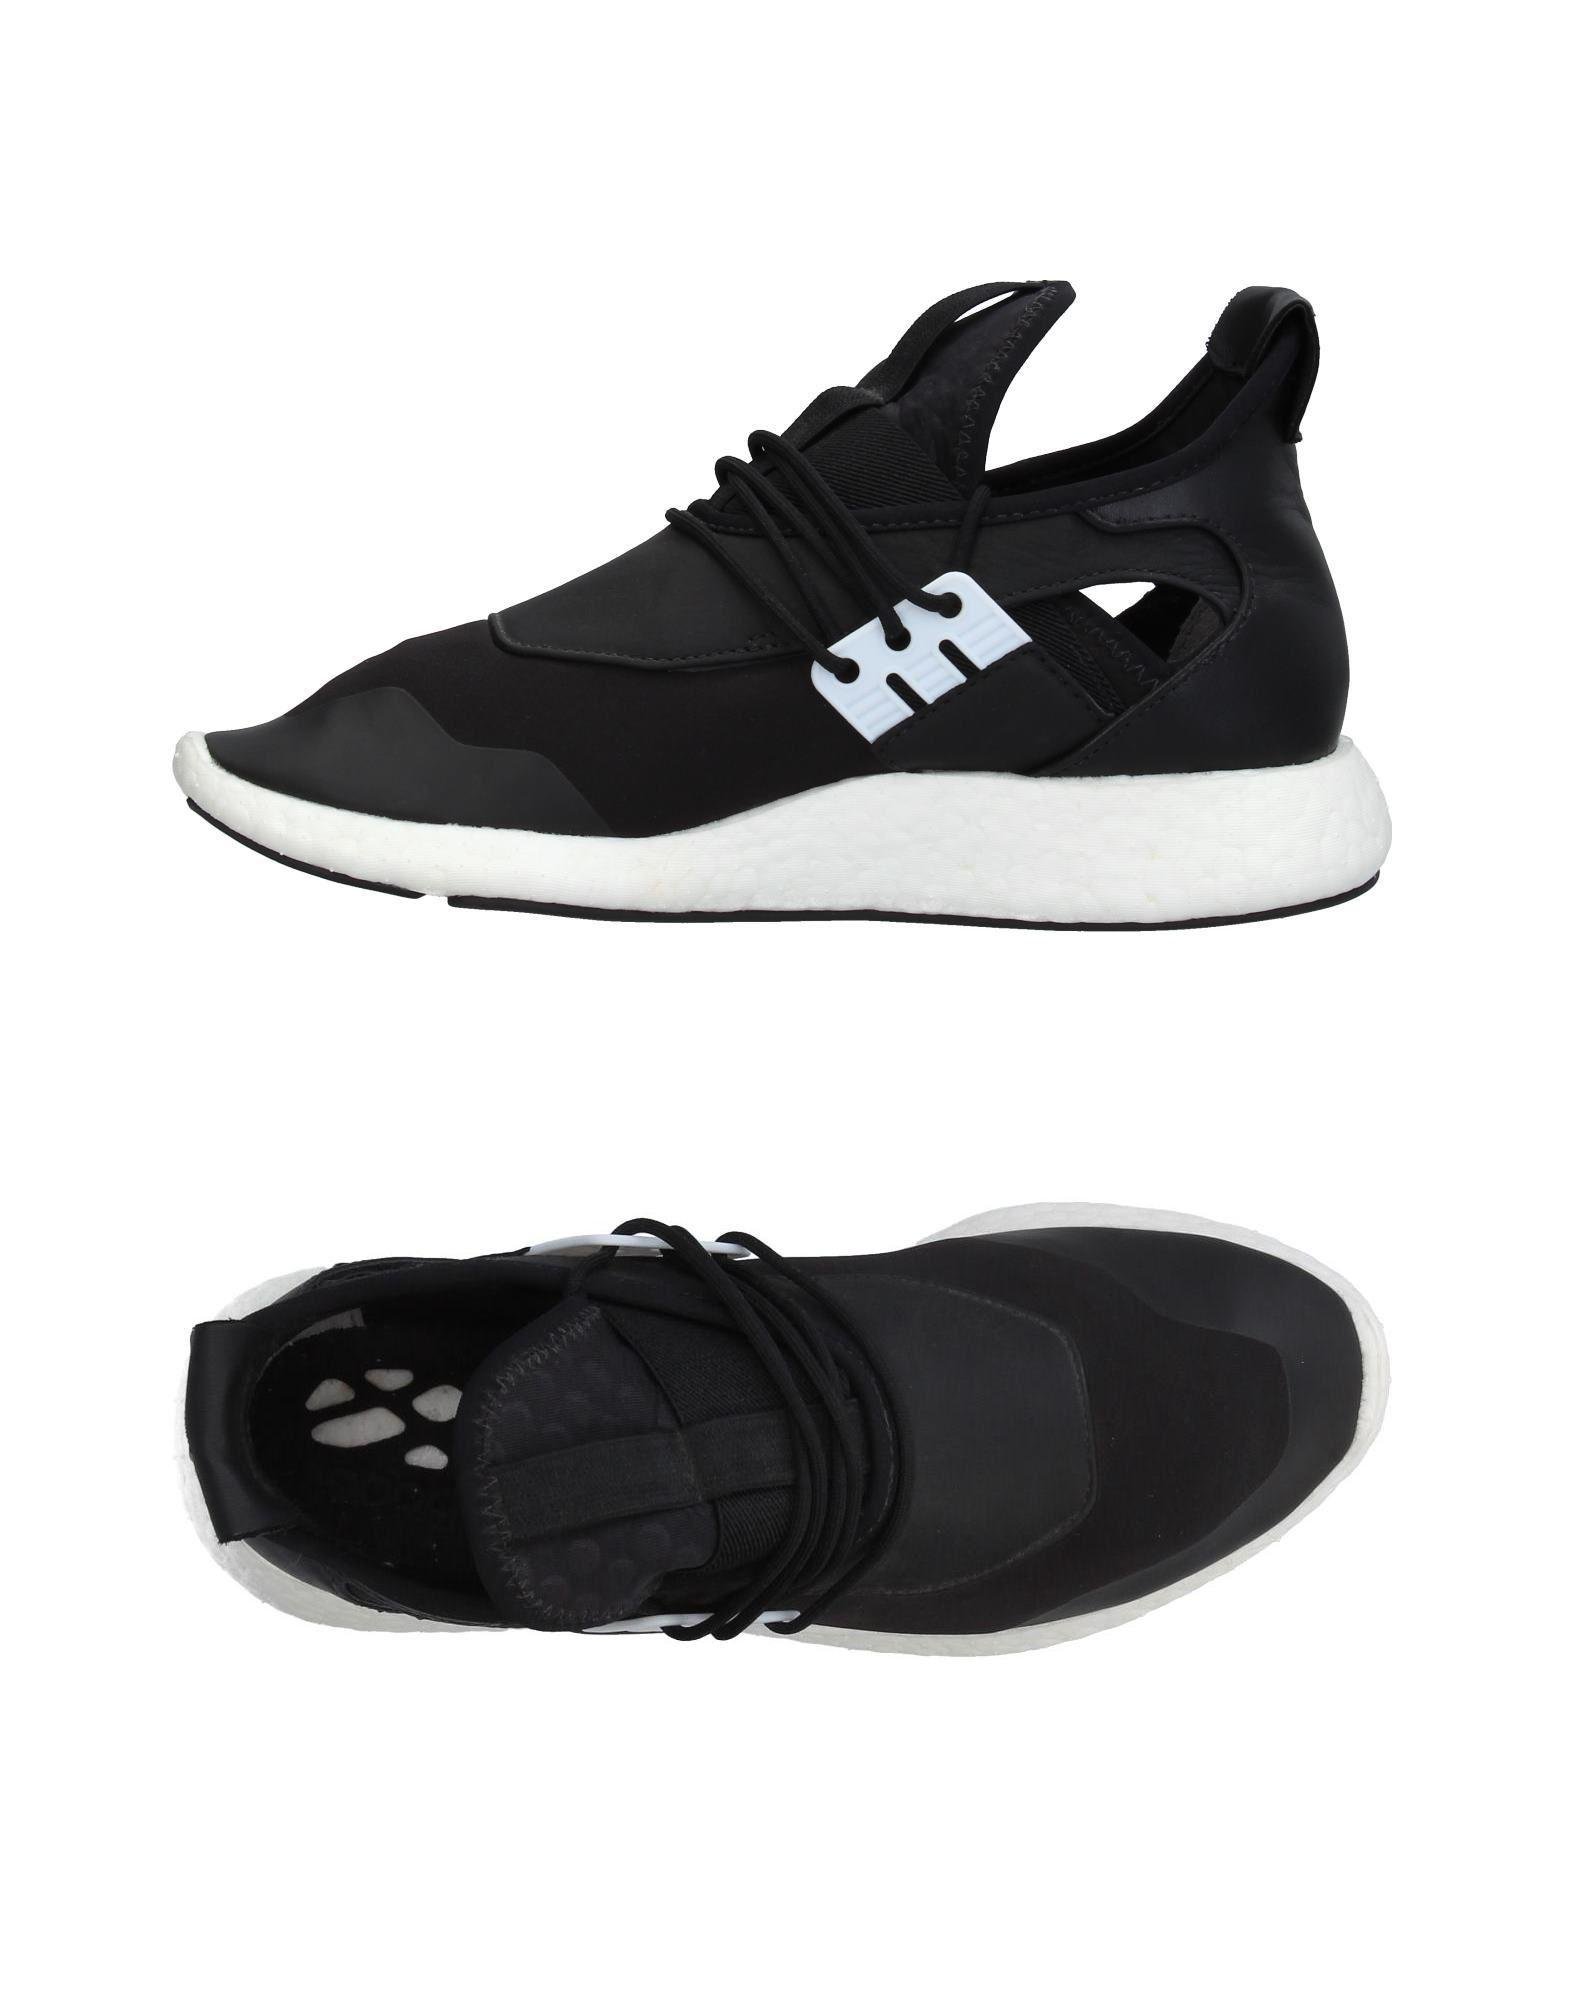 Y-3 Neoprene Low-tops & Sneakers in Black - Lyst